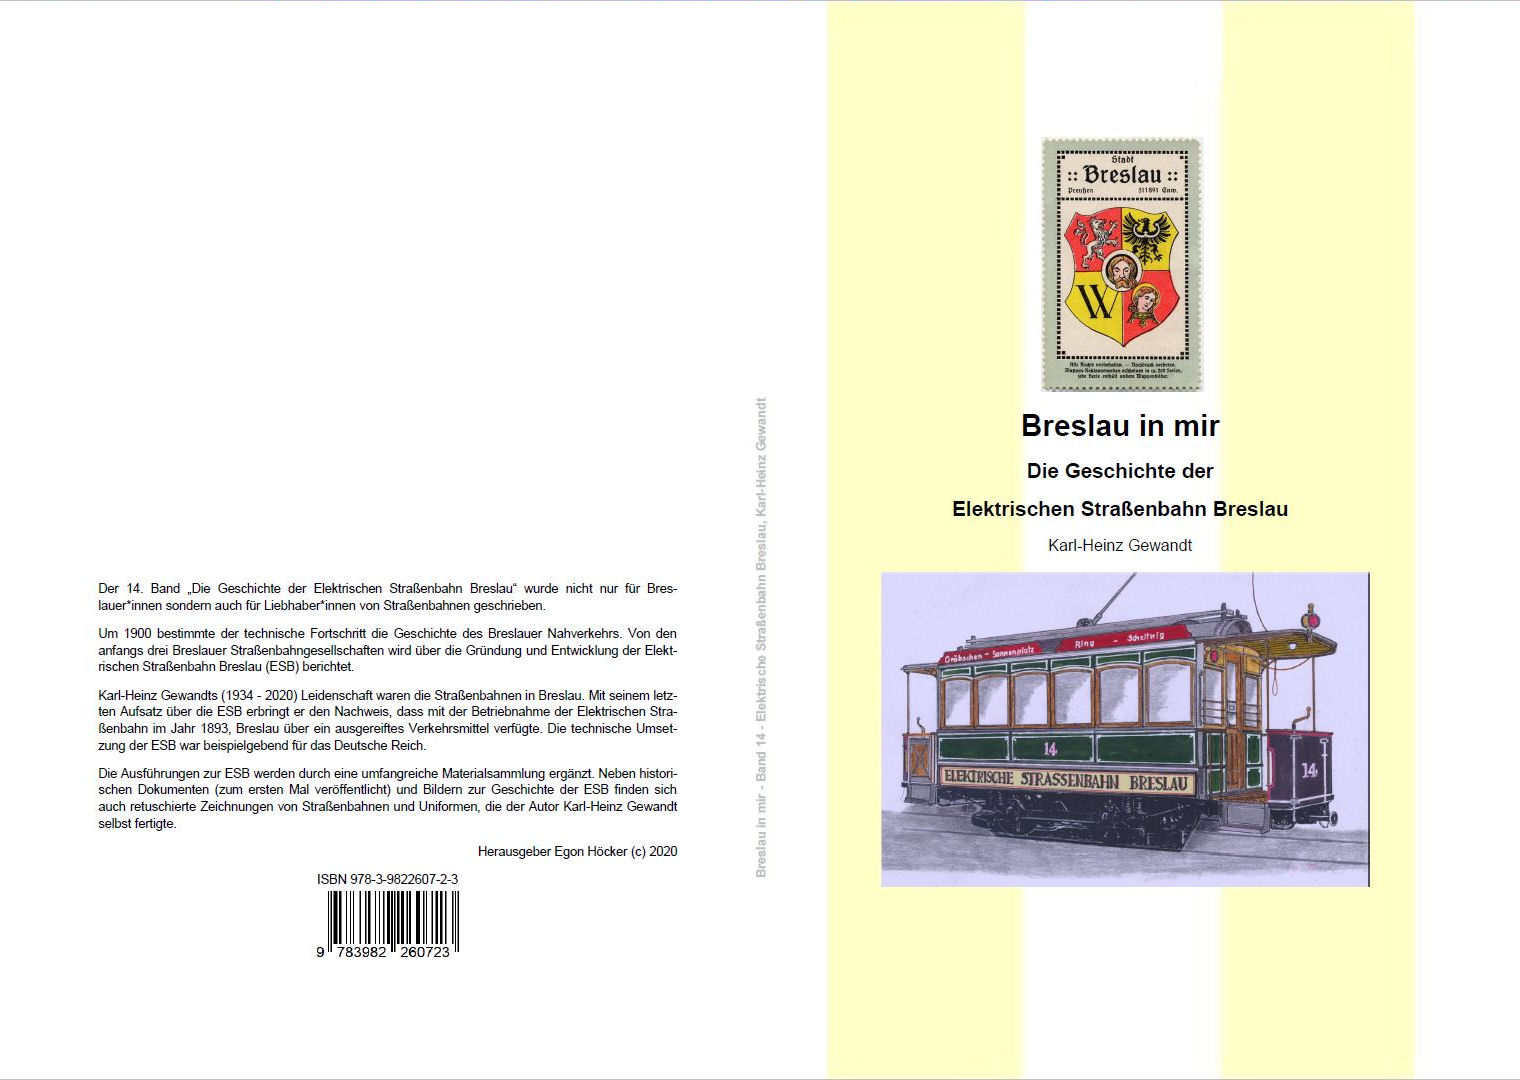 Breslau in mir,
 Die Geschichte der Elektrischen Straßenbahn Breslau